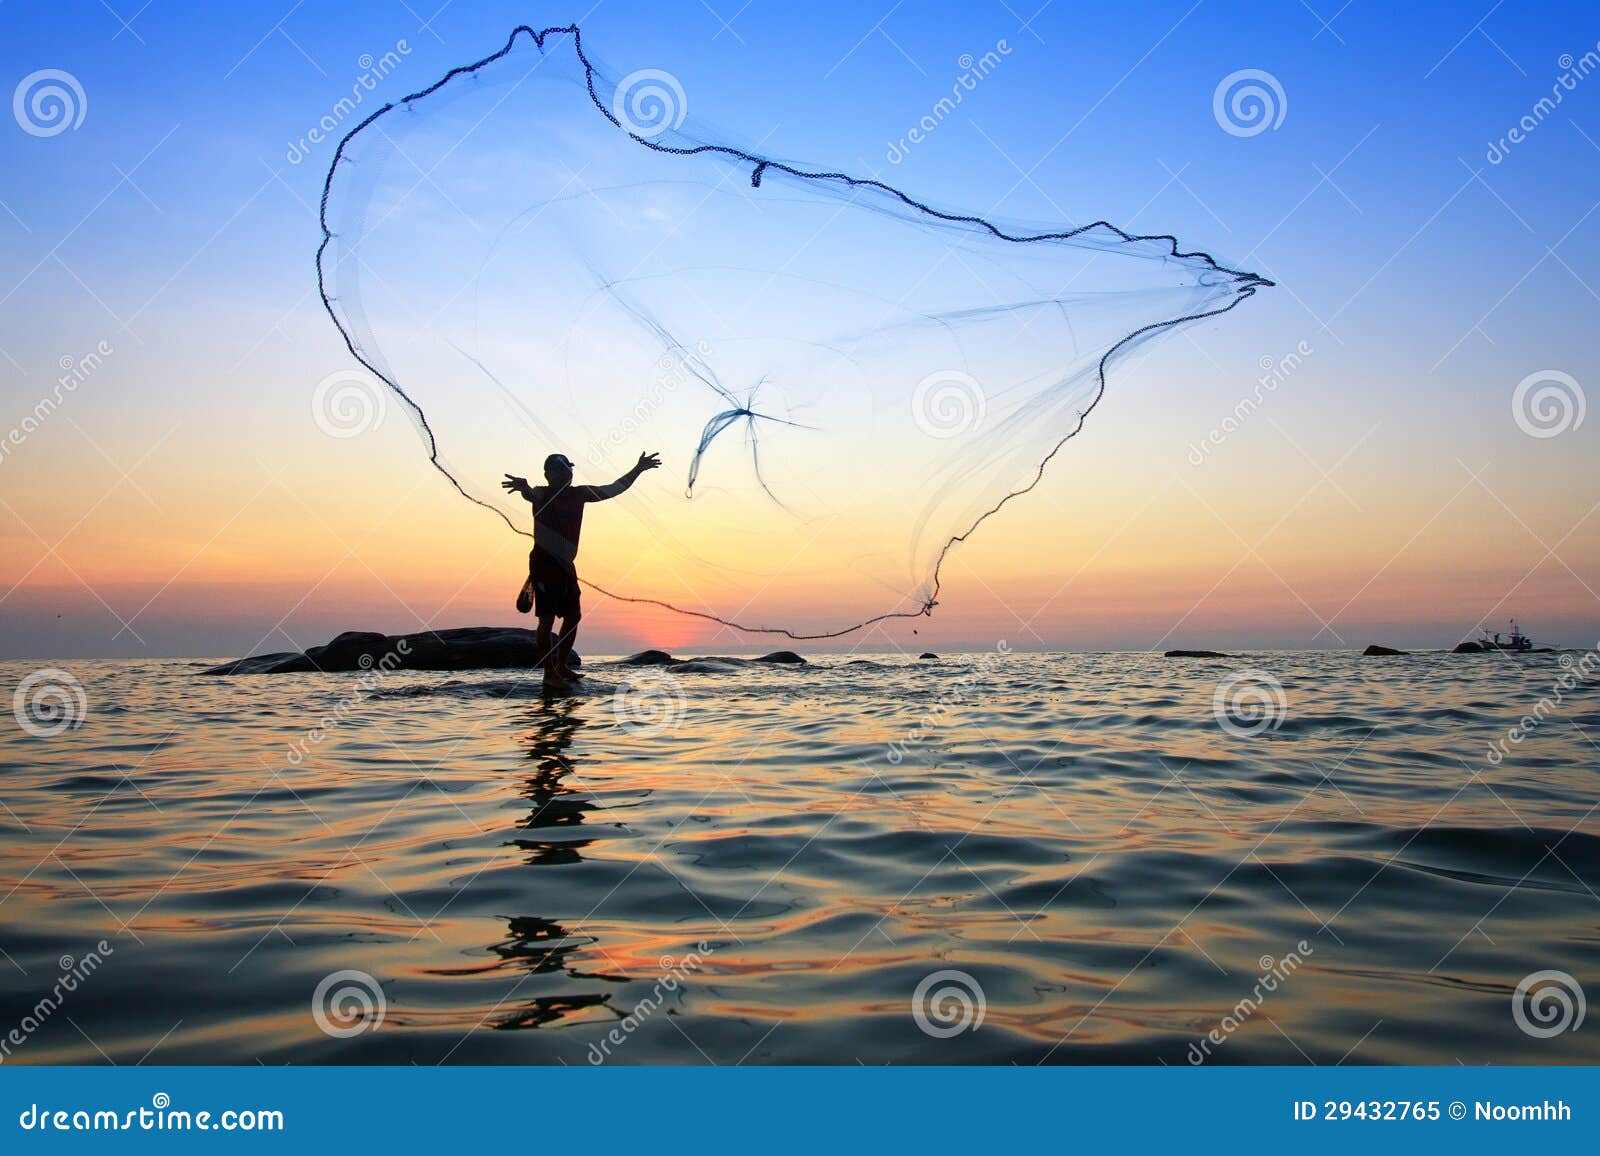 Throwing fishing net stock image. Image of fisherman - 29432765